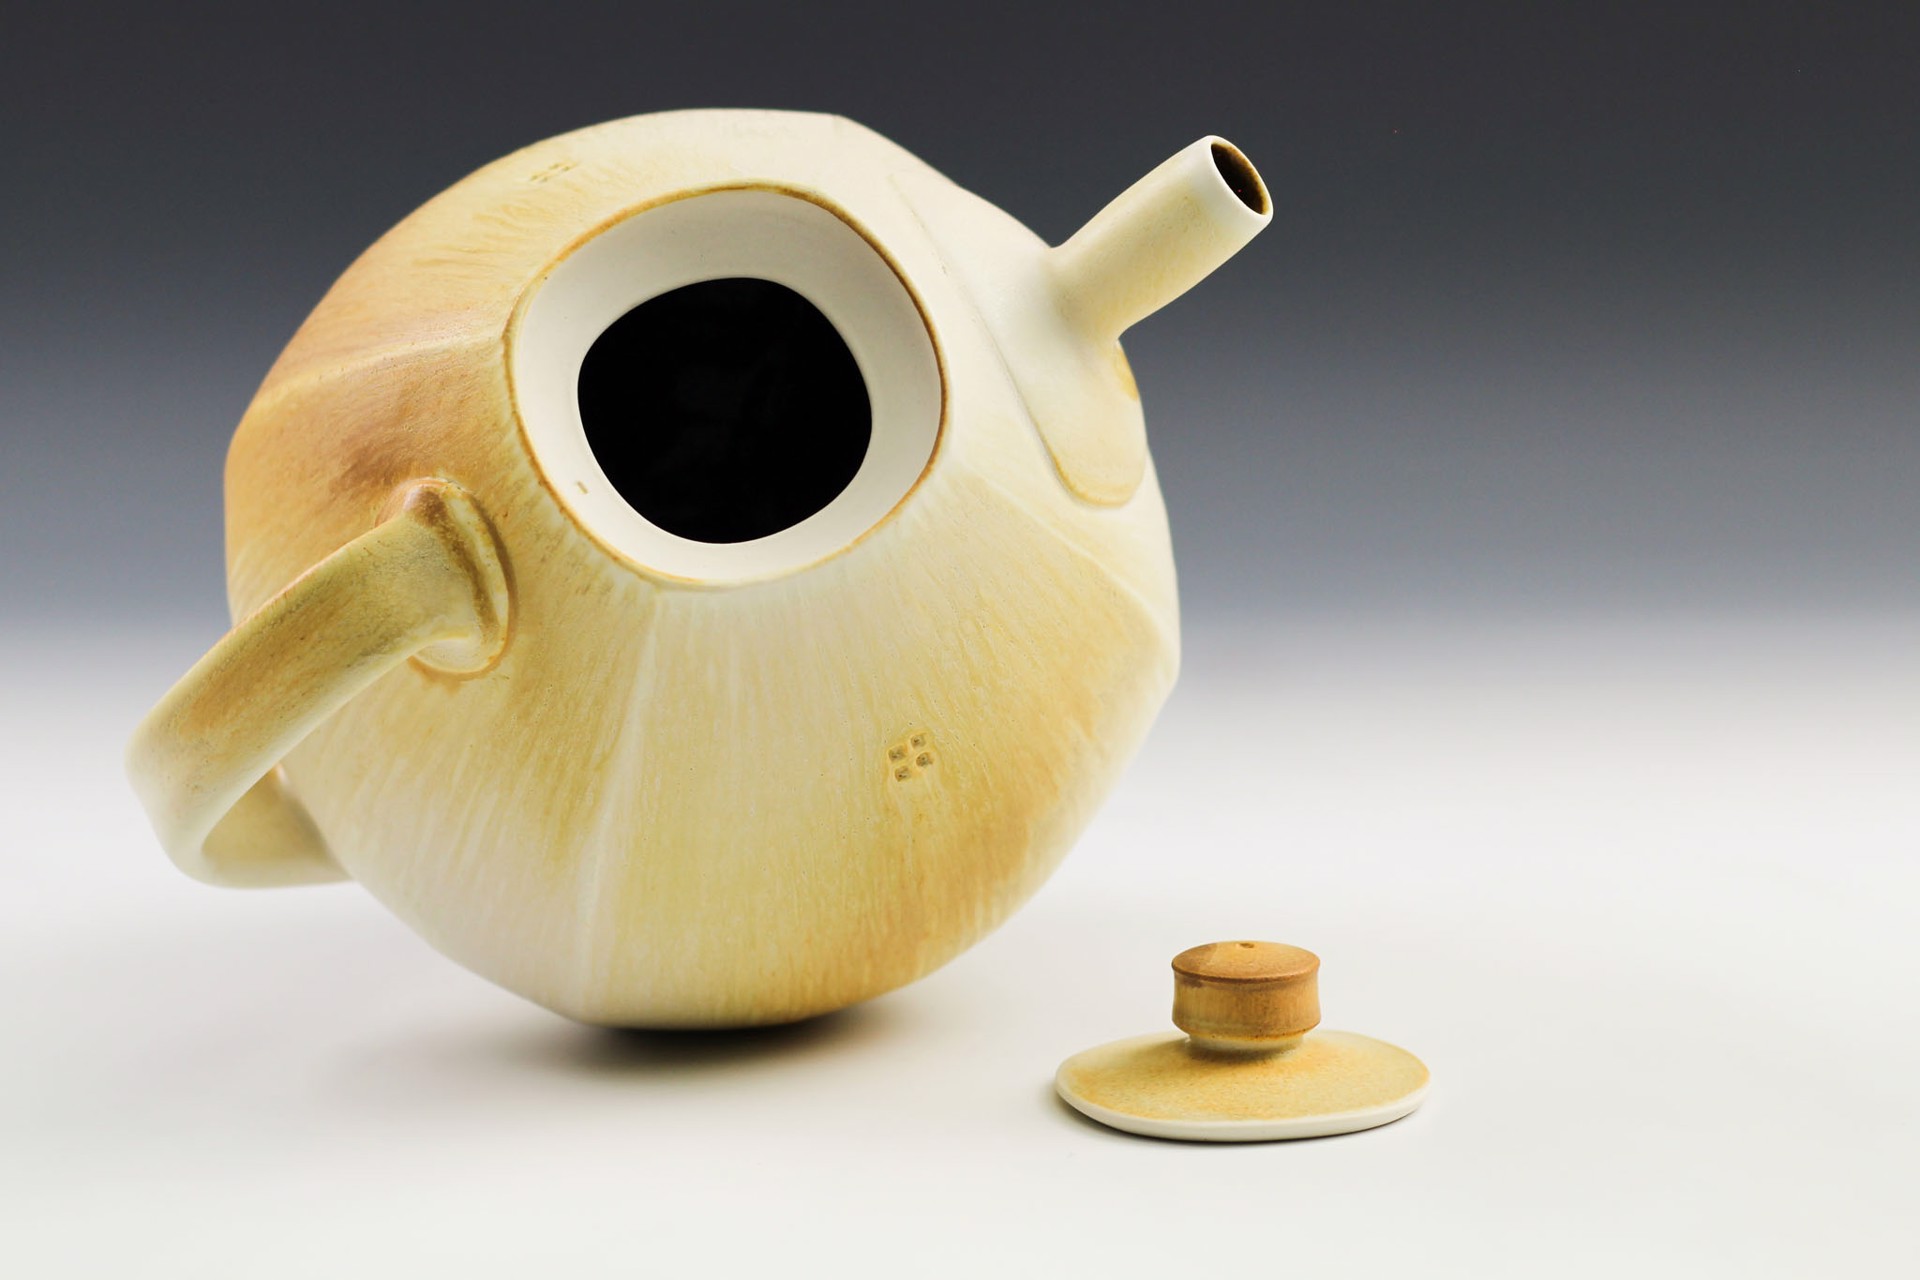 Teapot by Nick DeVries